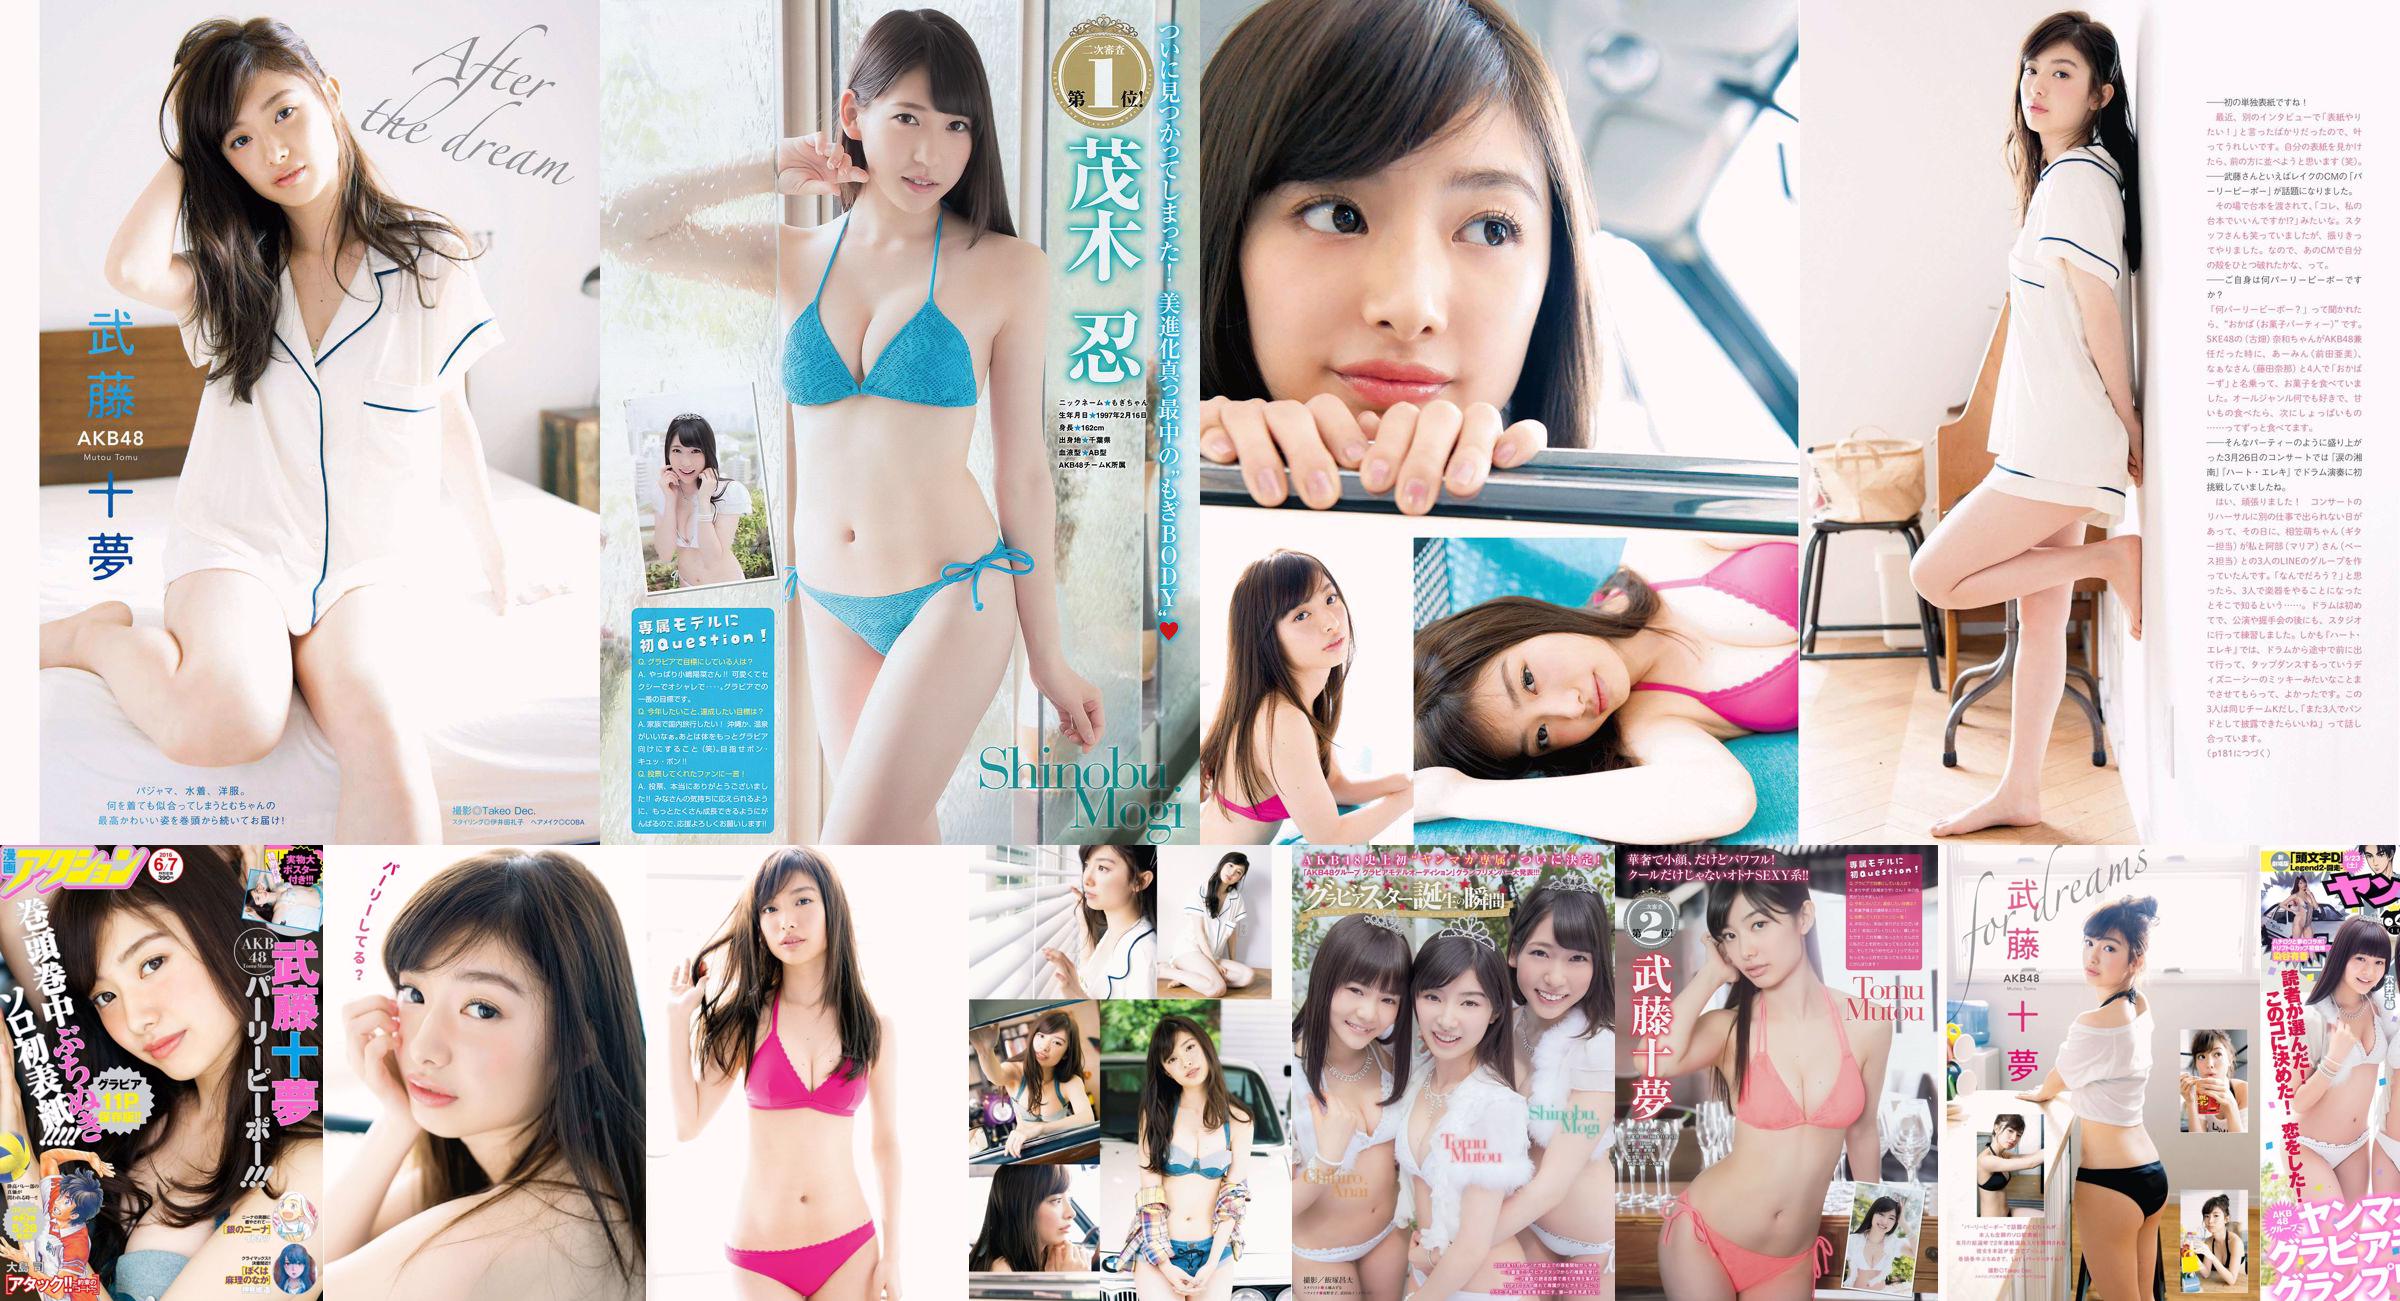 [Young Magazine] Tomu Muto Shinobu Mogi Chihiro Anai Erina Mano Yuka Someya 2015 No.25 Photograph No.a05d23 หน้า 4